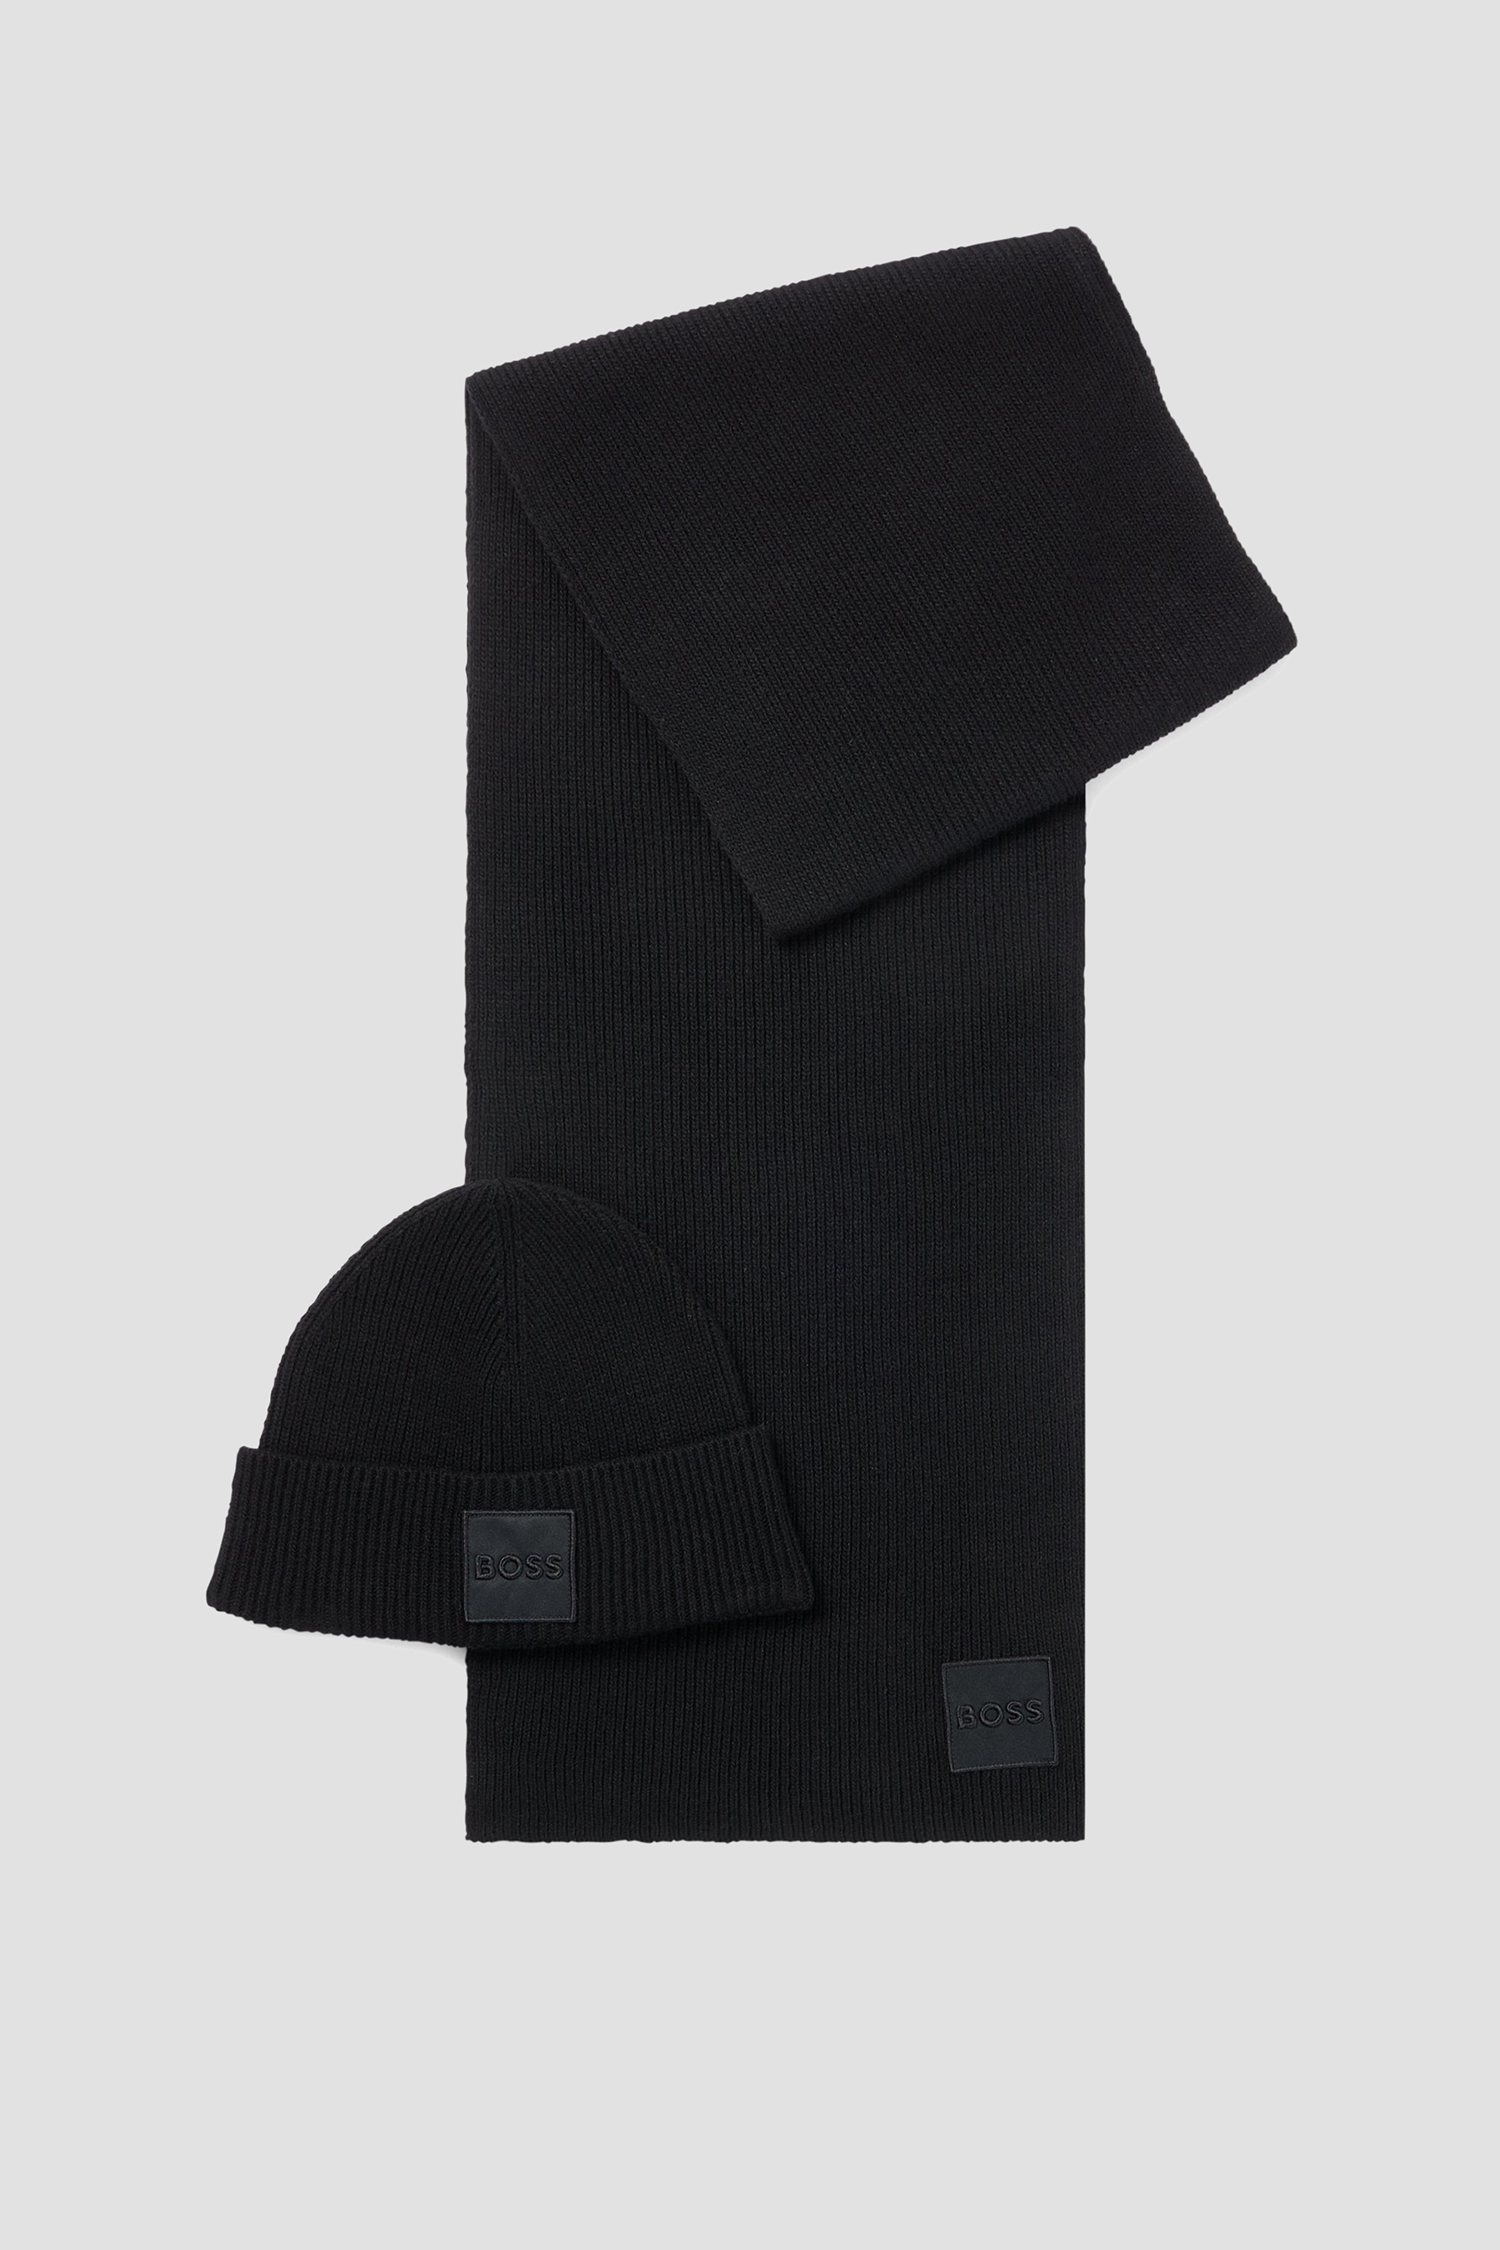 Мужской набор аксессуаров (шапка, шарф) 1